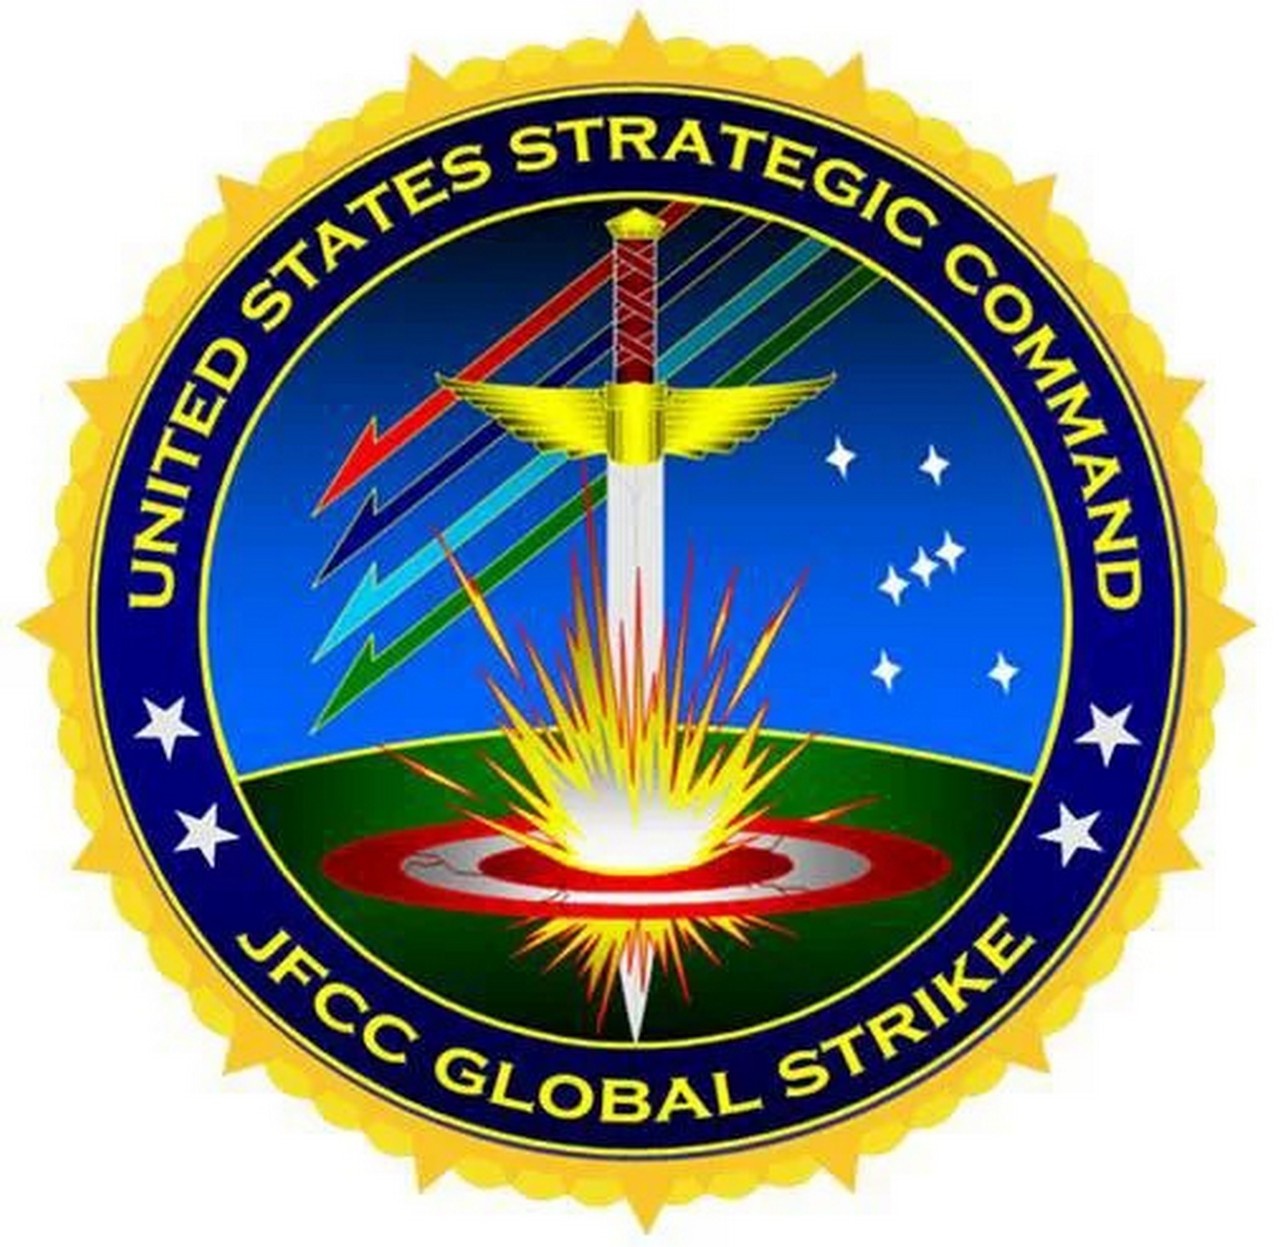 Летом 2006 года Стратегическое командование создало собственное обособленное подразделение, объединяющее все функции управления операциями МГУ - Joint Functional Component Command for Global Strike.